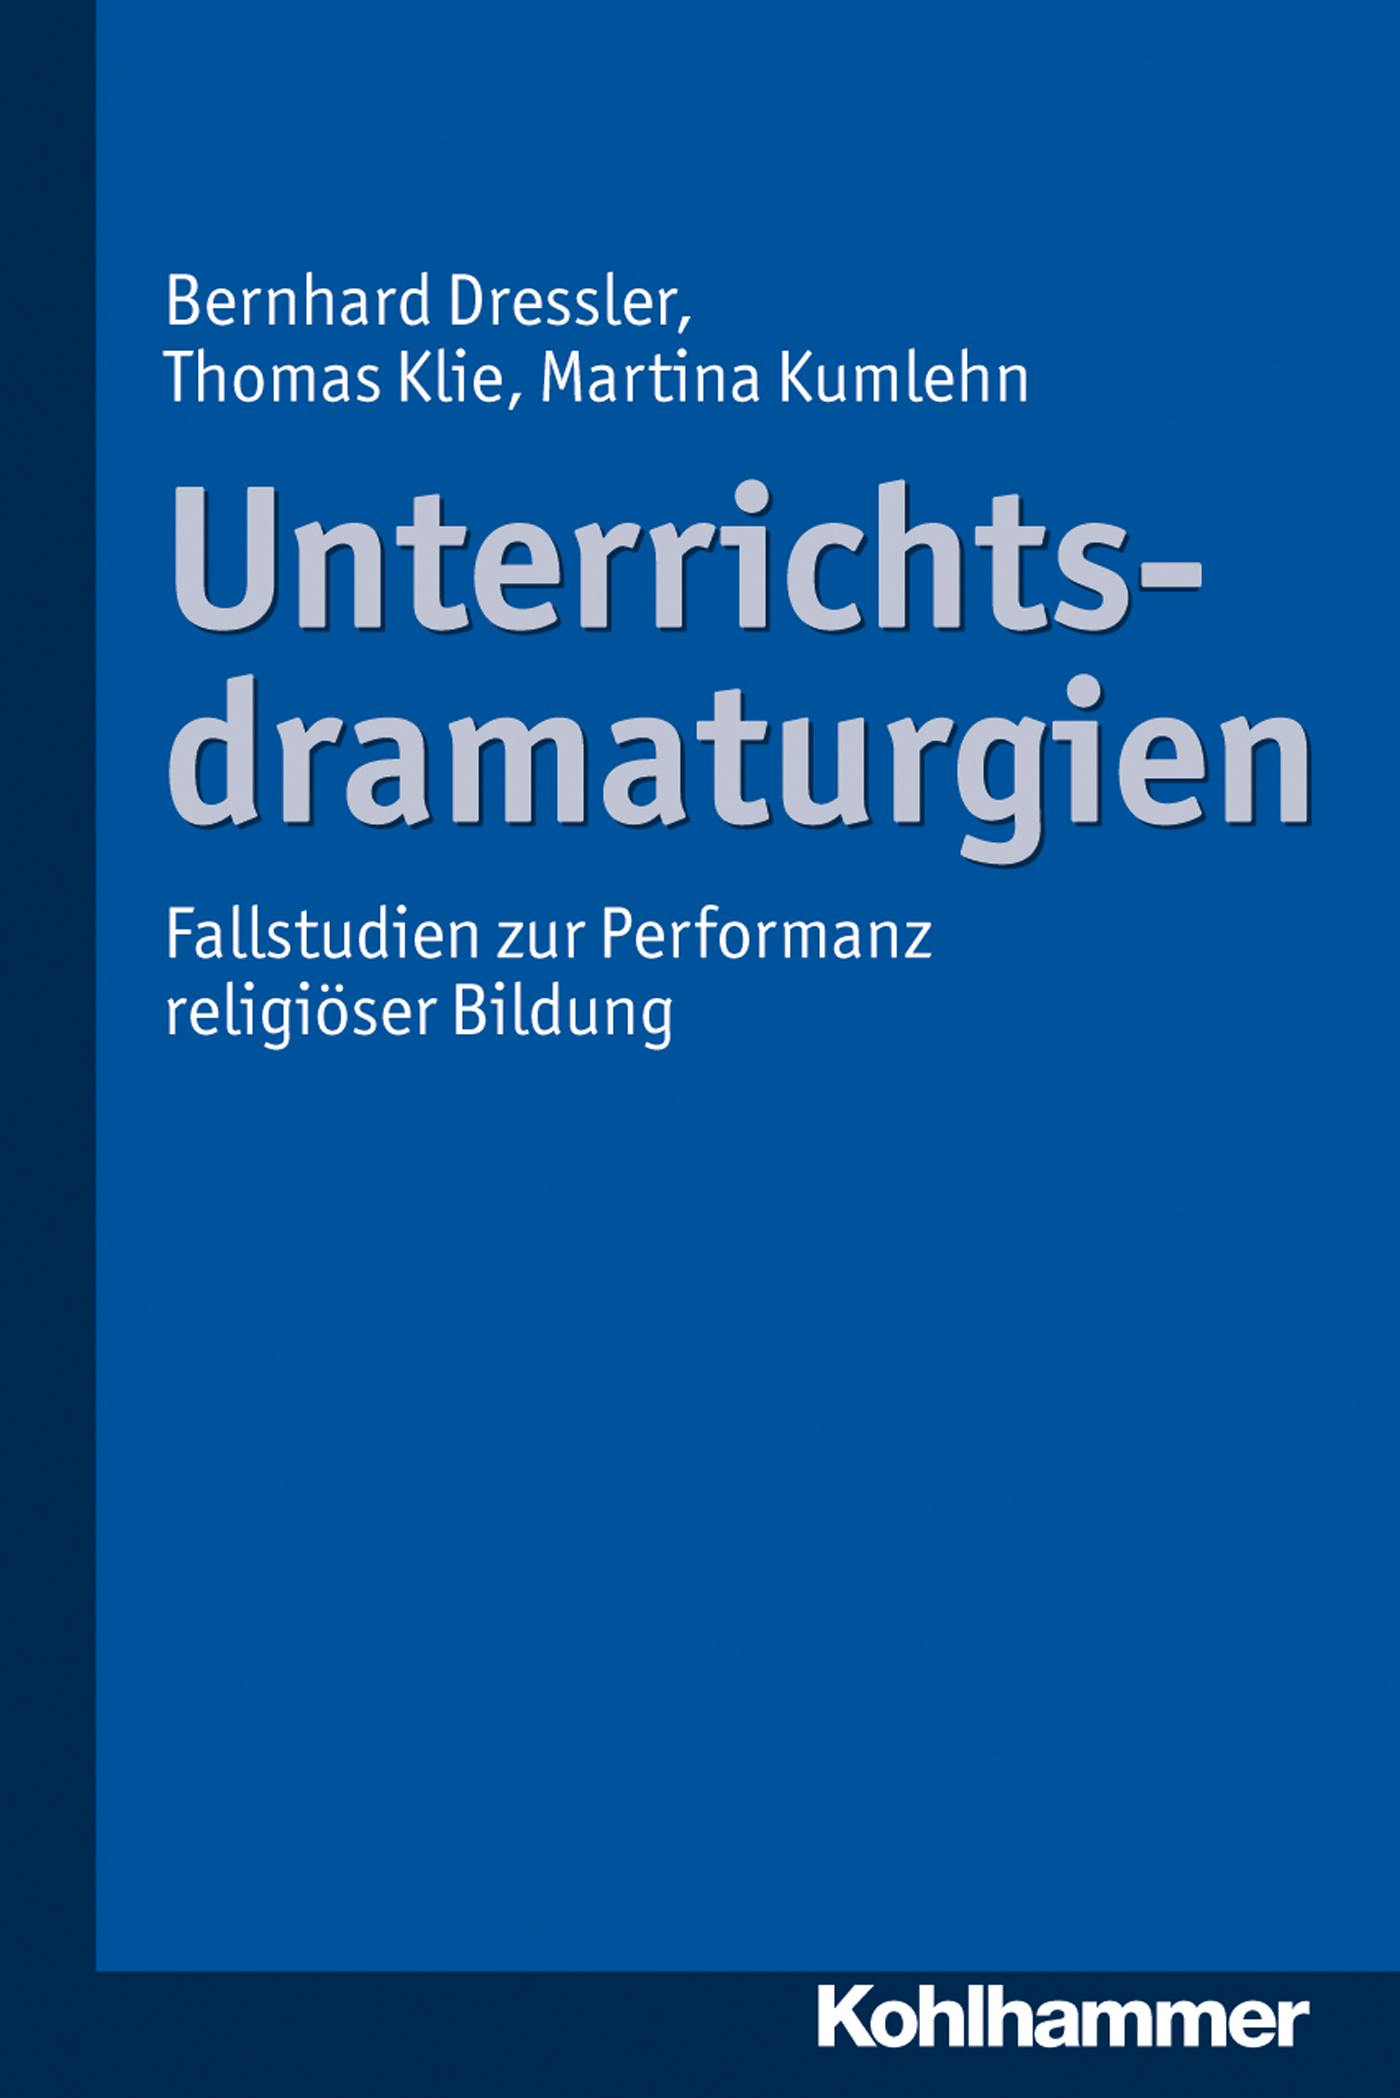 Unterrichtsdramaturgien: Fallstudien zur Performanz religiöser Bildung - Thomas Klie, Martina Kumlehn, Bernhard Dressler